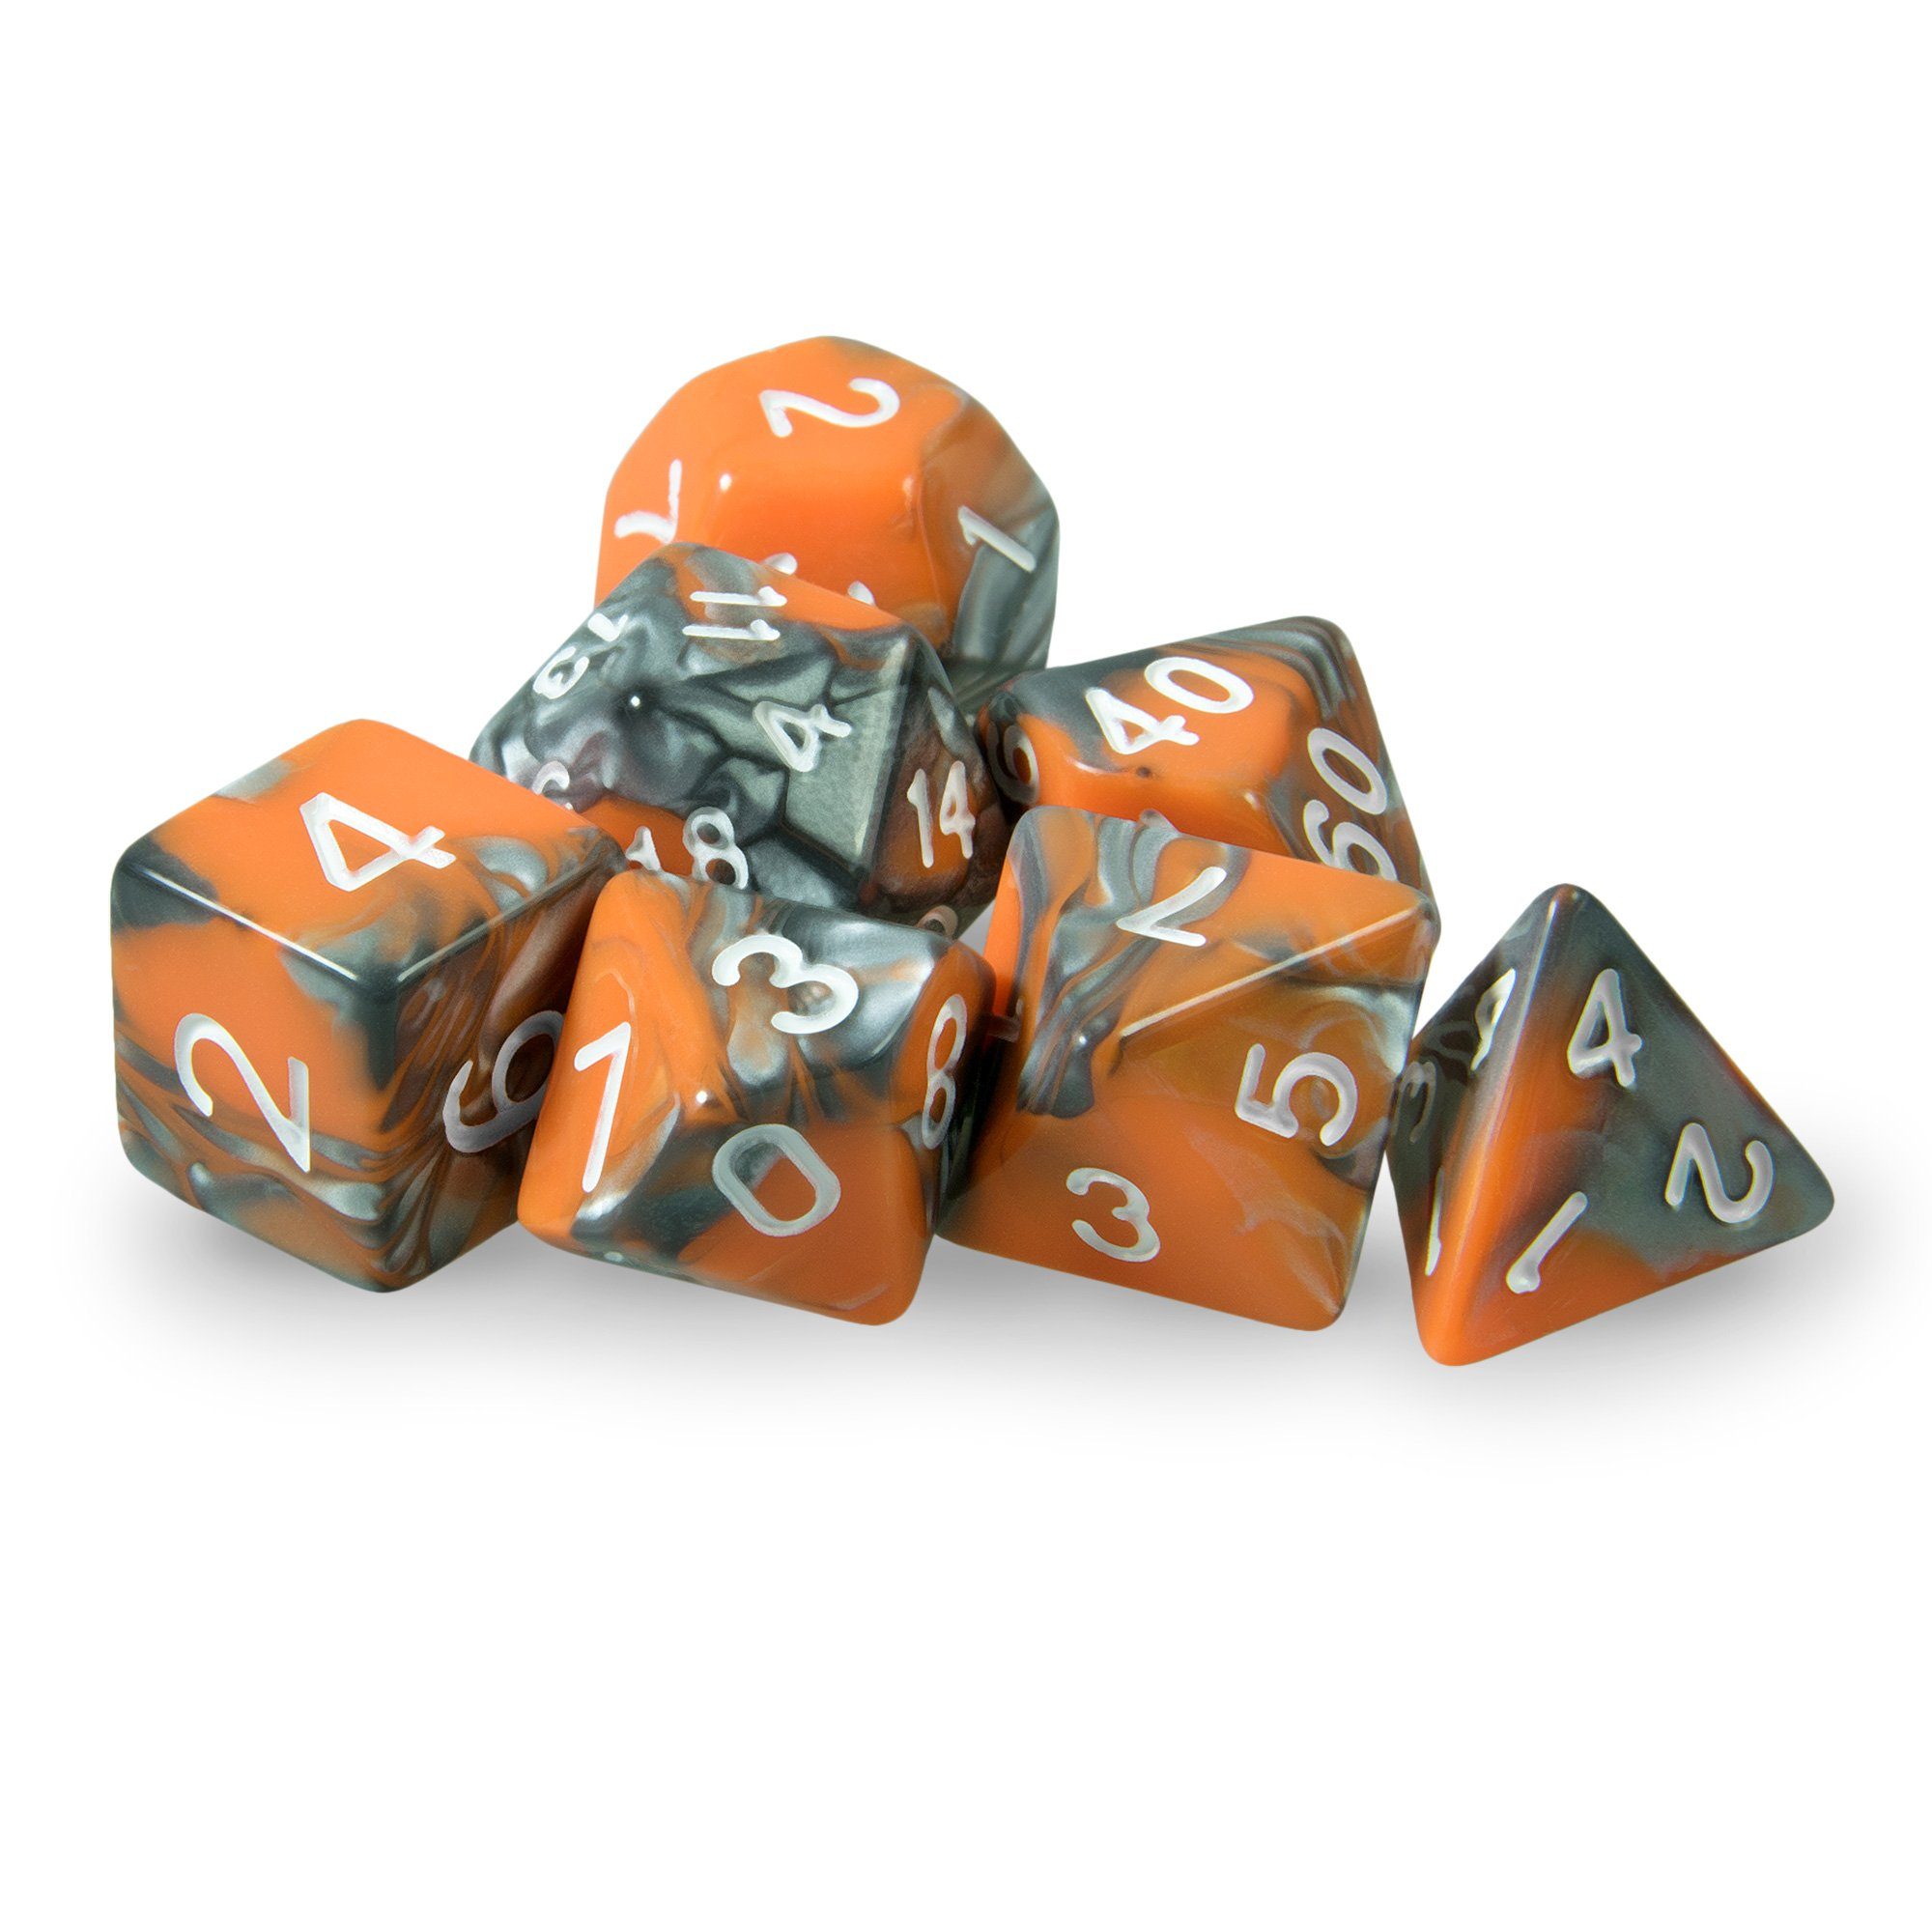 SHIBBY Spielesammlung, 7 polyedrische DND Würfel in dichromatisch - mit Beutel Orange